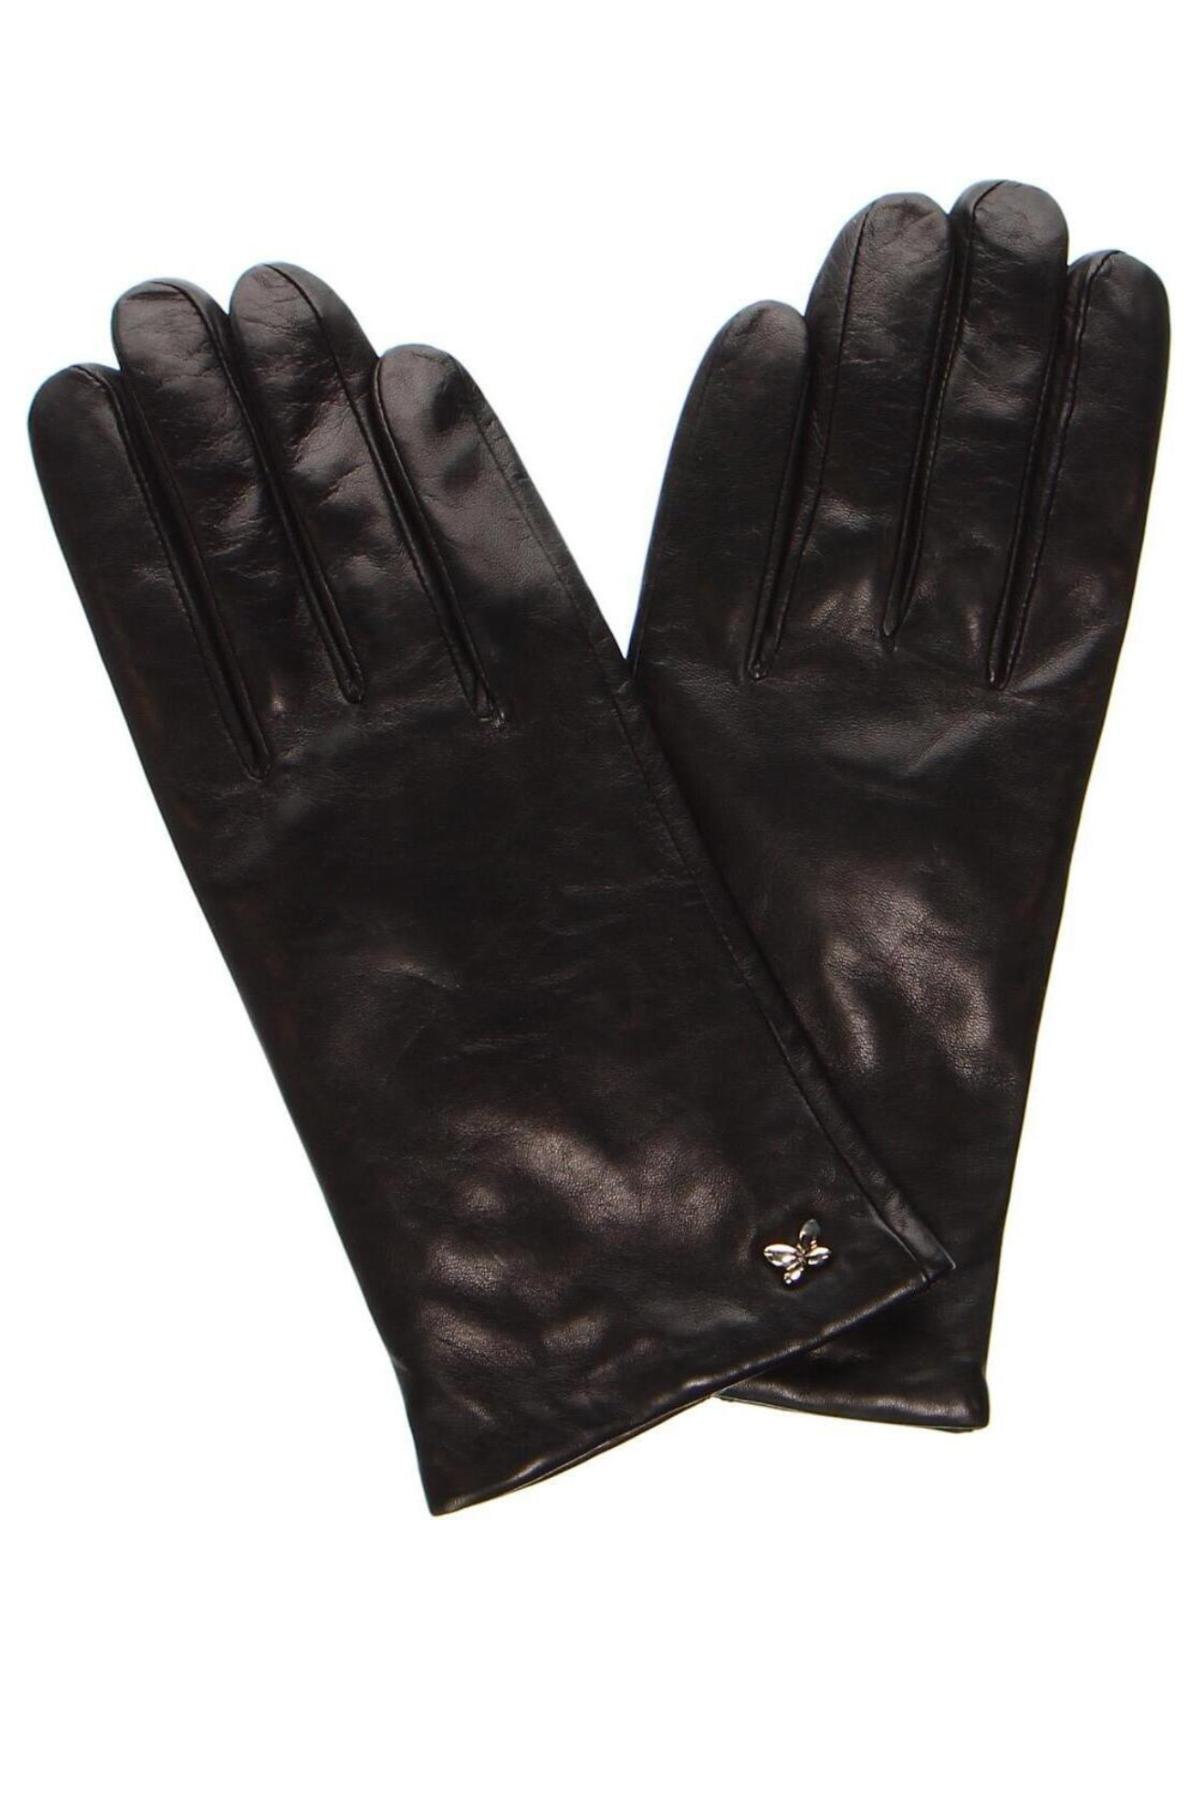 Ръкавици Furla, Цвят Черен, Цена 140,00 лв.